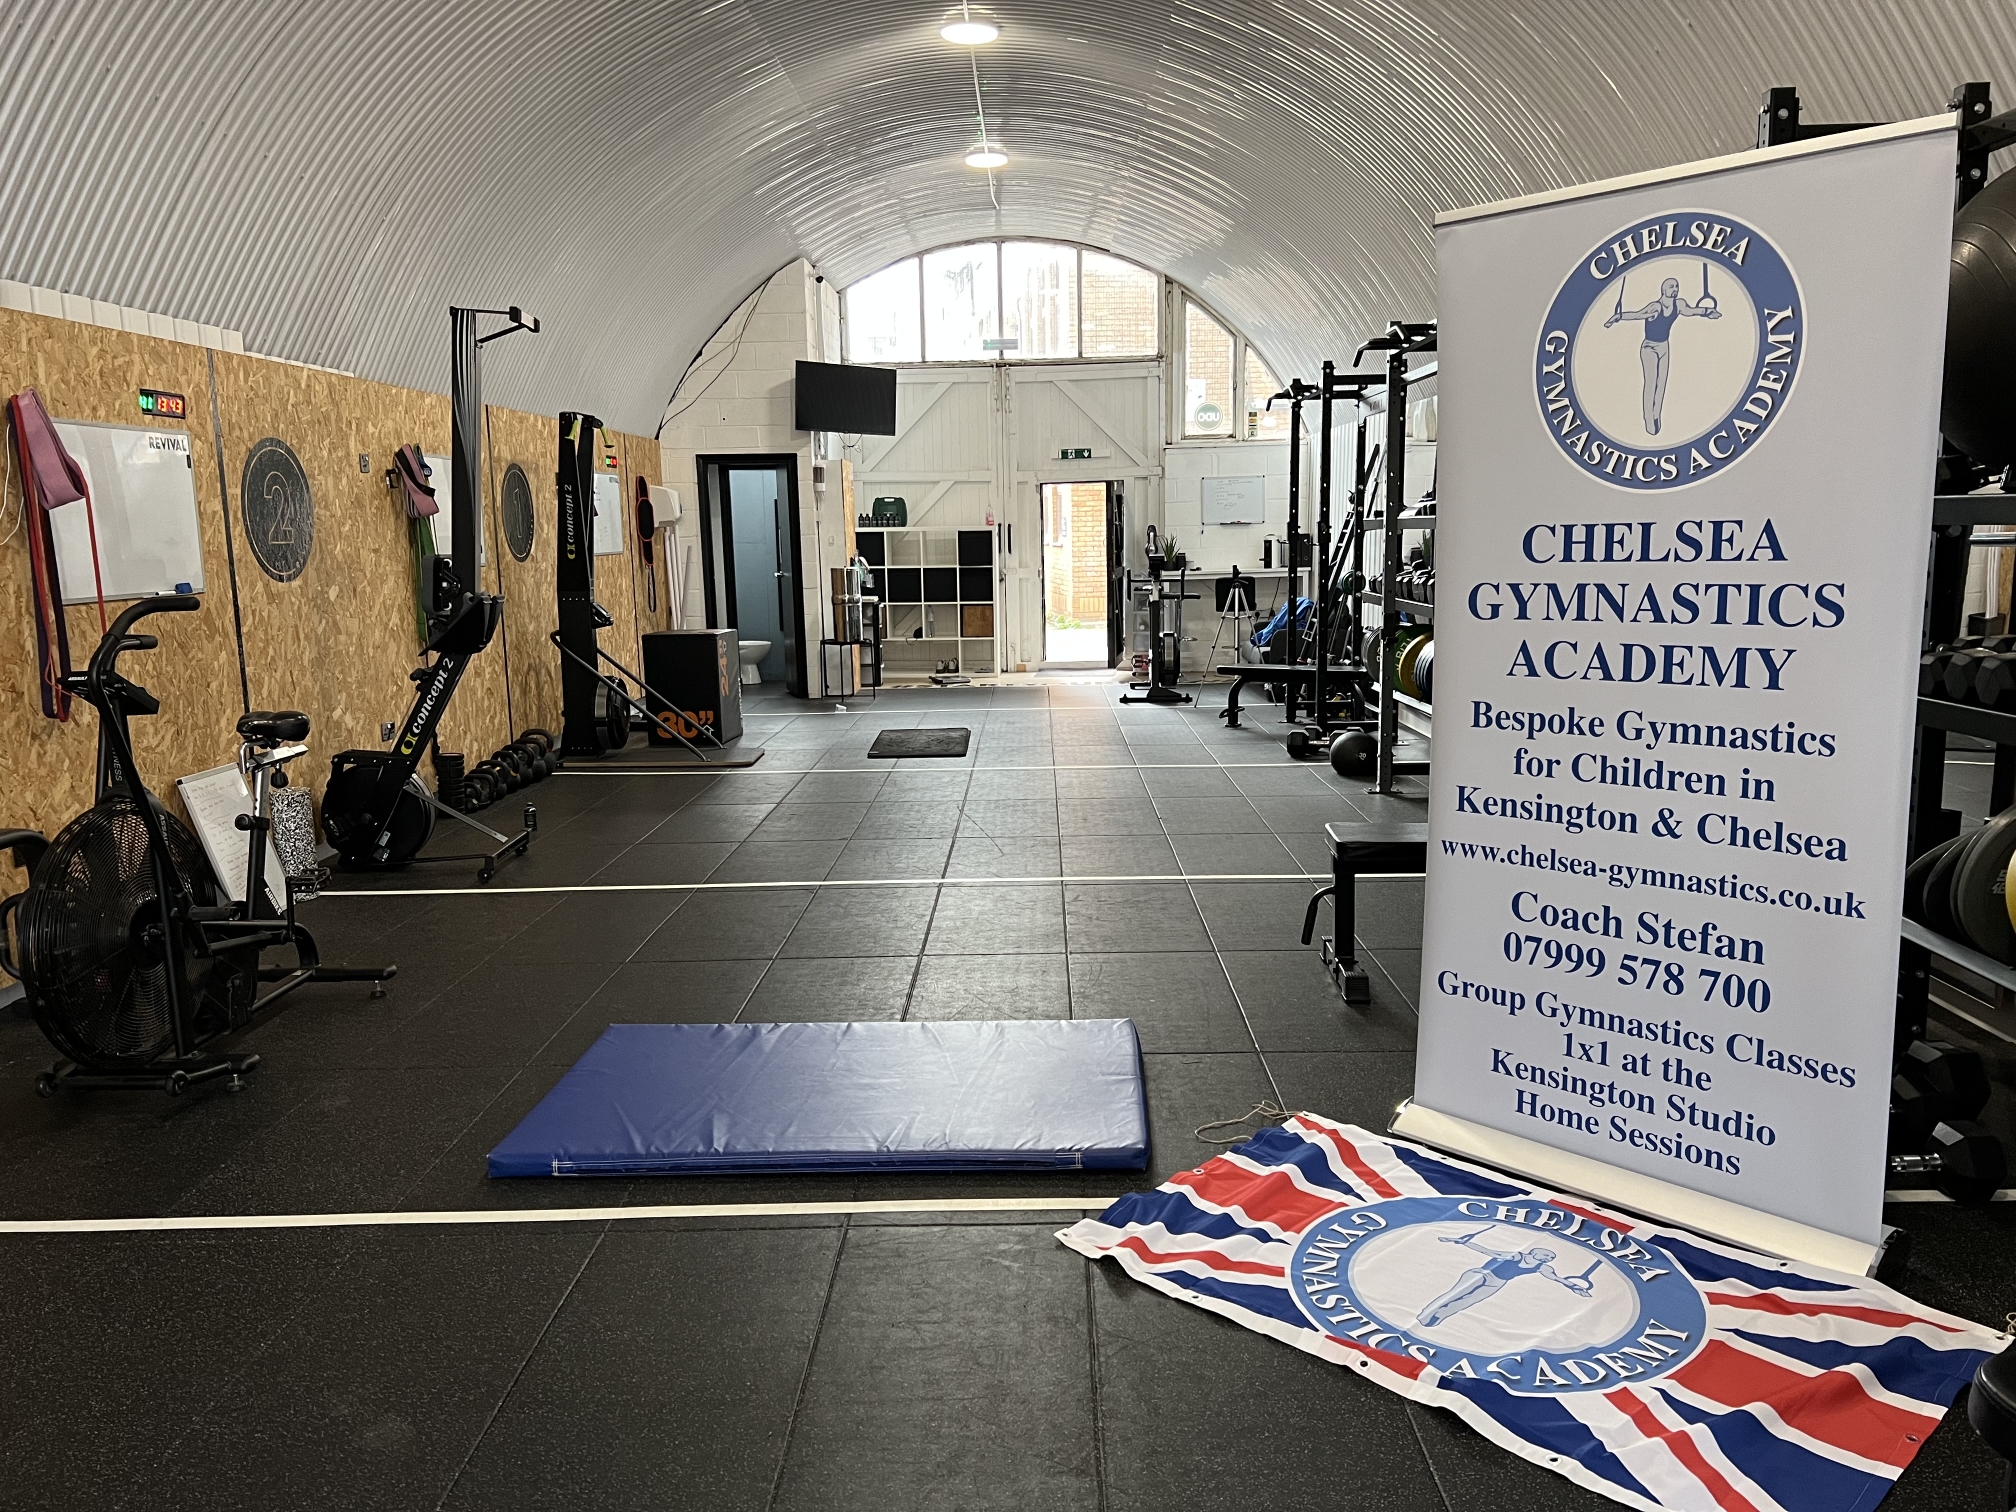 Chelsea Gymnasrtics Academy in London (Gymnastics for Children in Hammersmith)